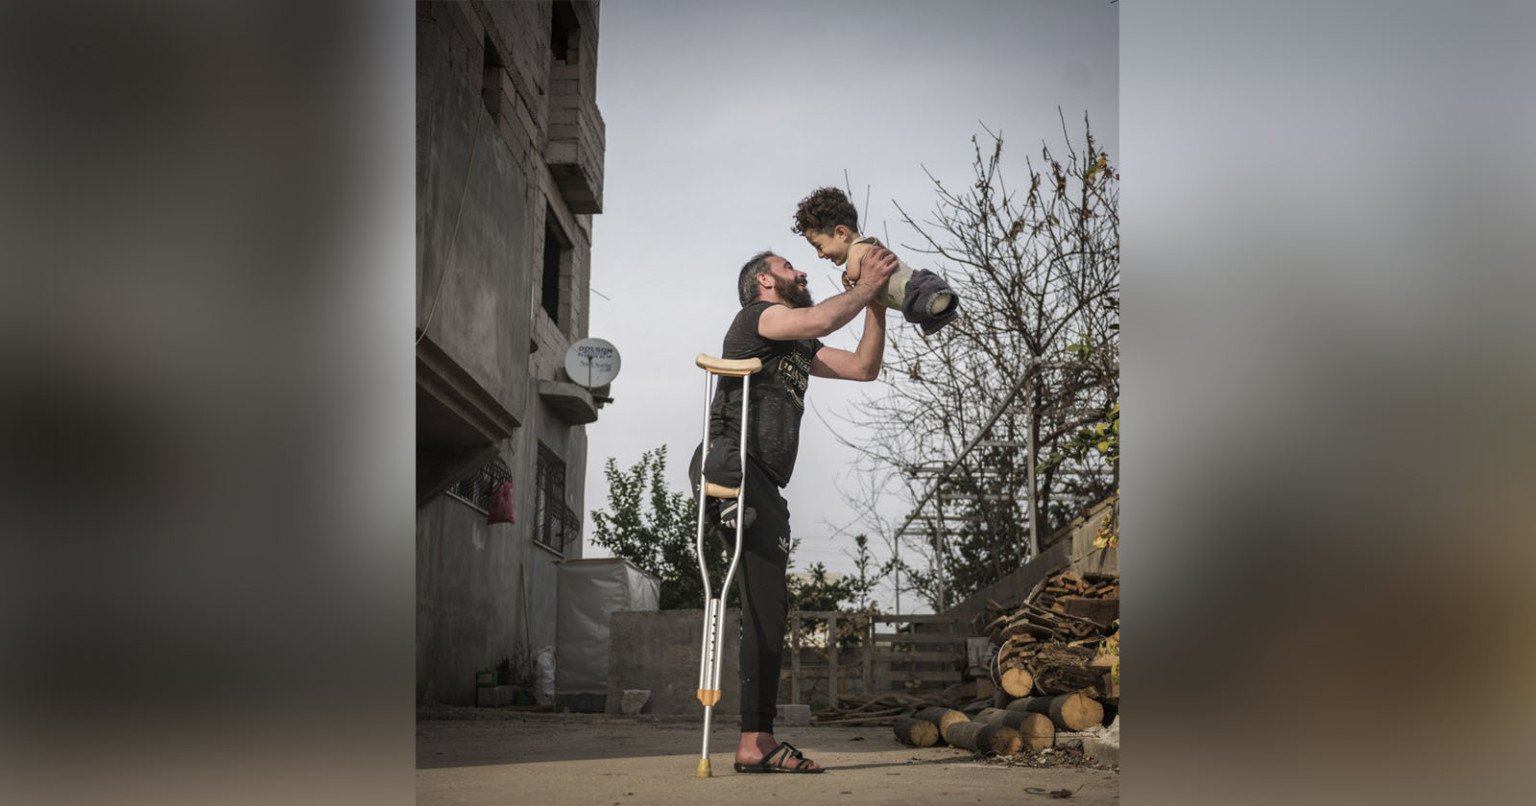 Tác phẩm "Hardship of Life" được vinh danh là bức ảnh của năm tại Giải thưởng Ảnh quốc tế Siena 2021